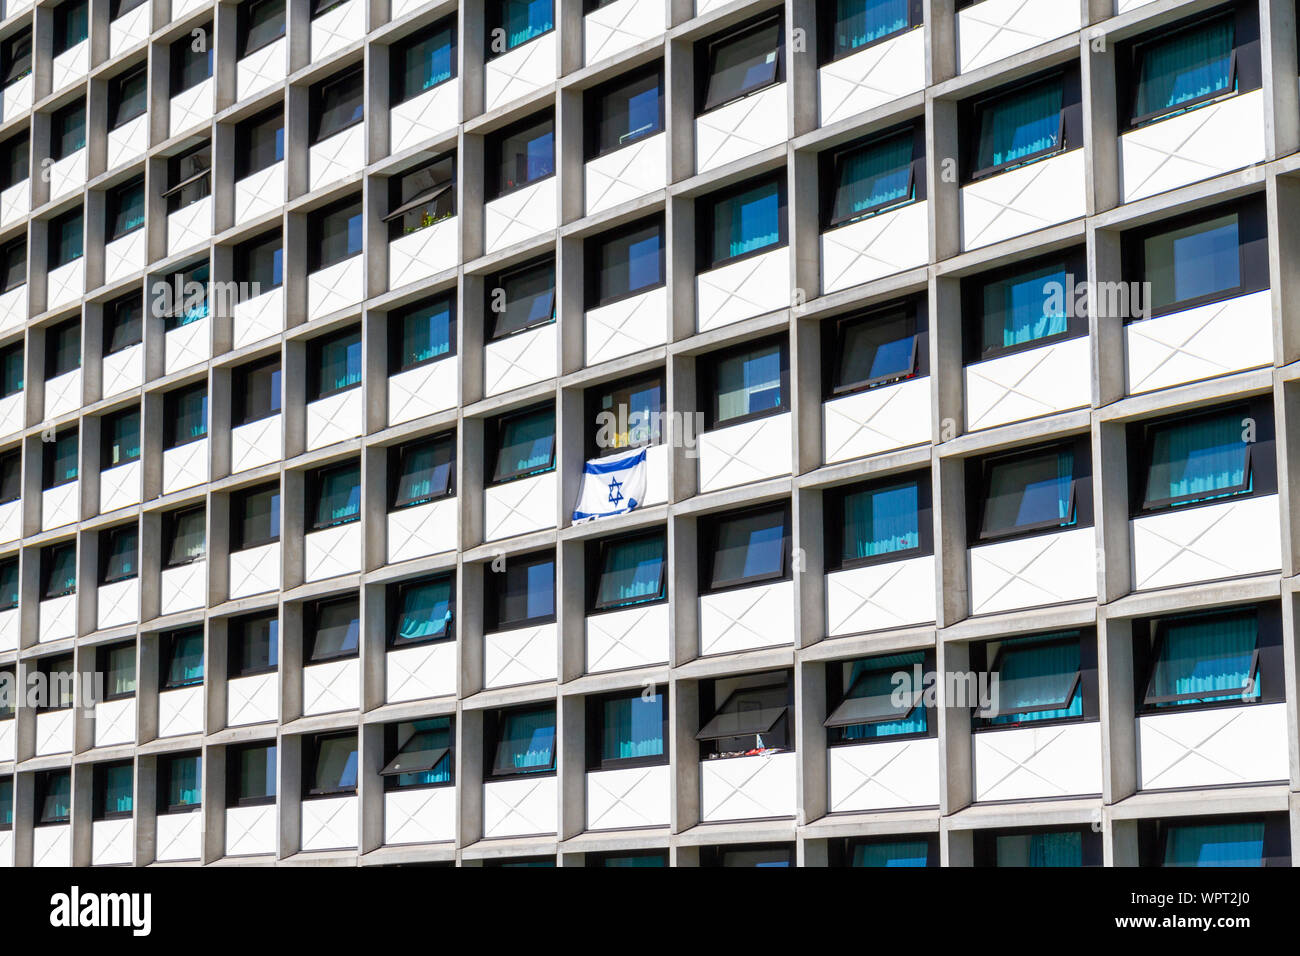 Bandiera israeliana su uno dei blocchi nel 1972 Villaggio Olimpico oggi, Monaco di Baviera, Germania. Foto Stock